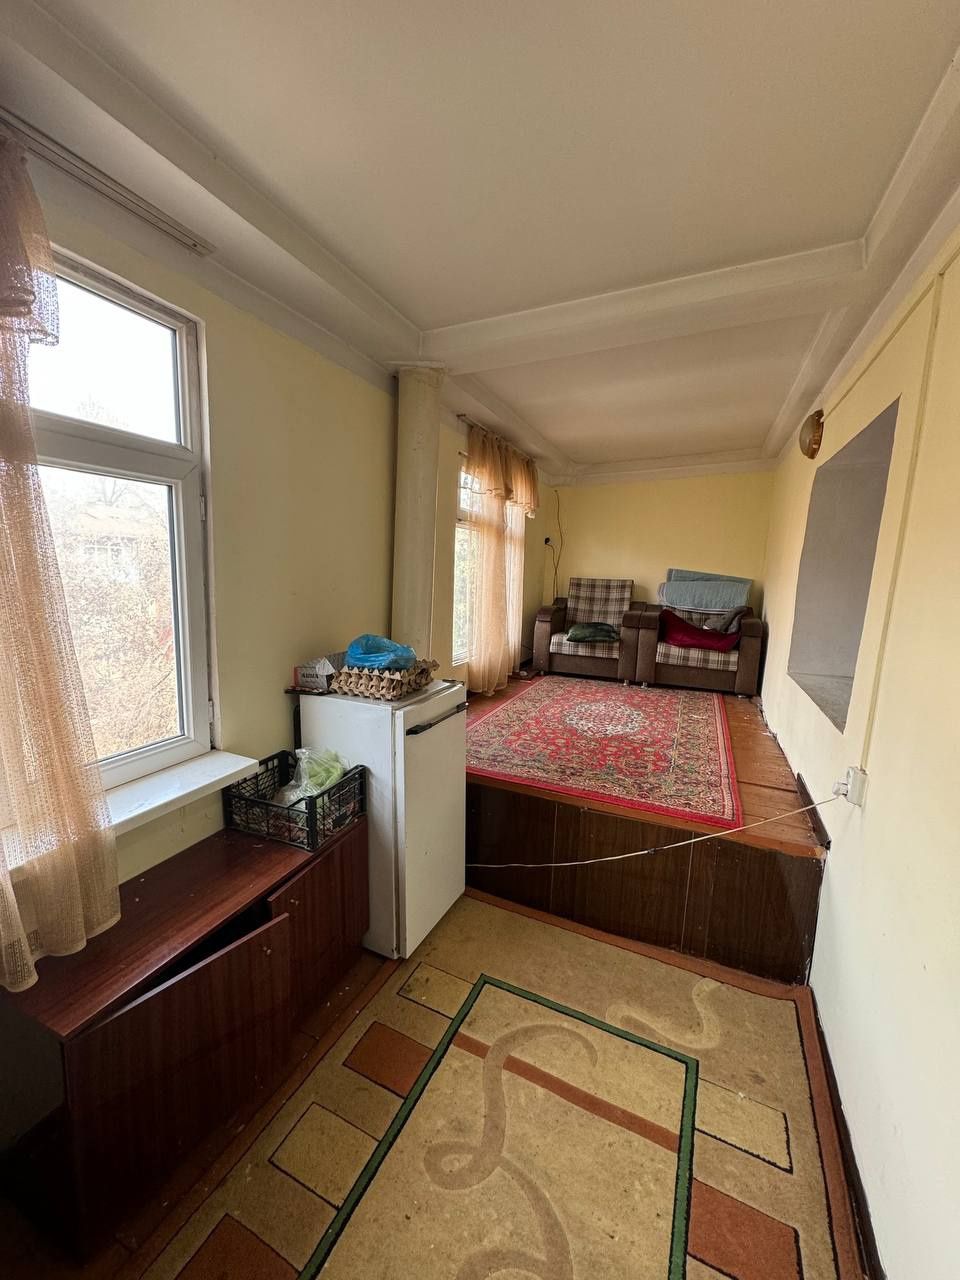 Продаётся квартира Чиланзар 8. 2/4/4 Кирпич балкон 2х6. Площадь 54м2